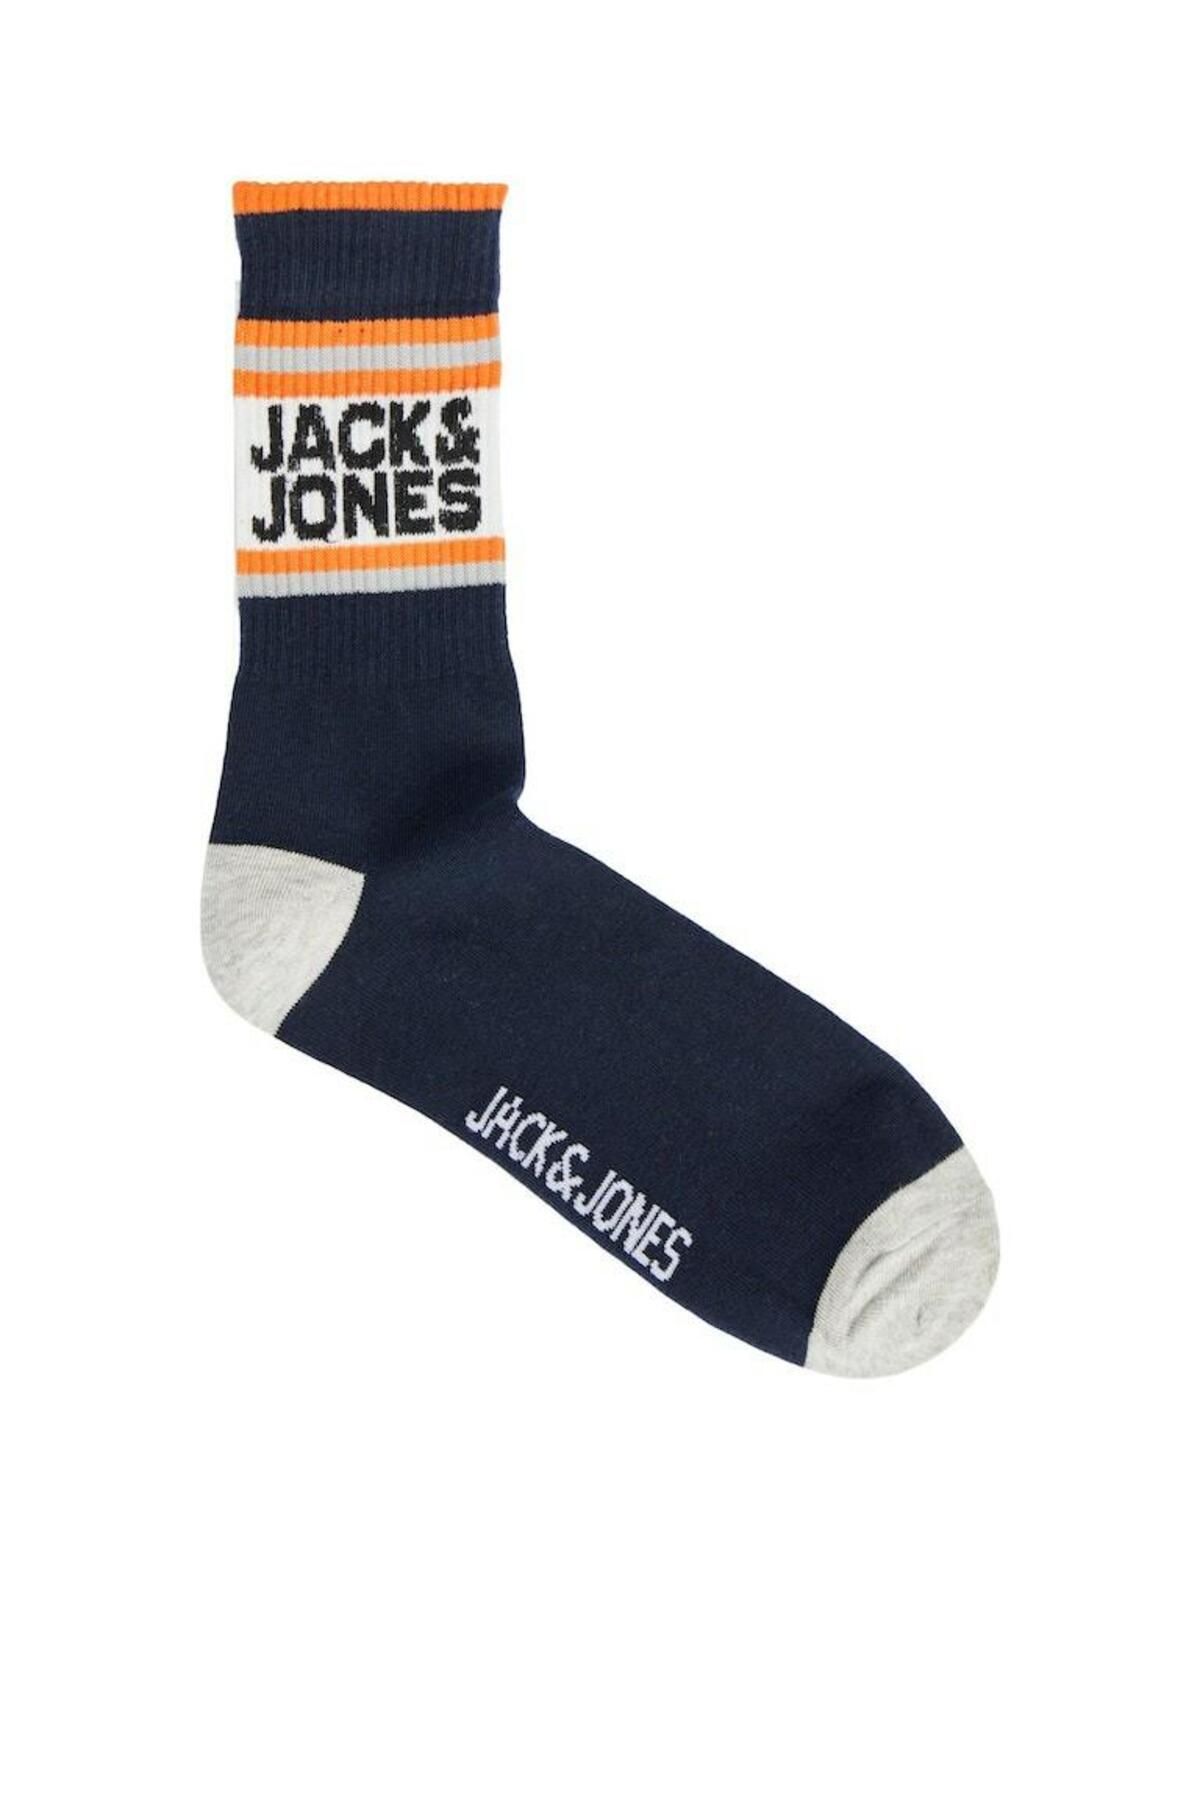 Jack & Jones Jack Jones Atletıc Logo Erkek Çorap 12240491